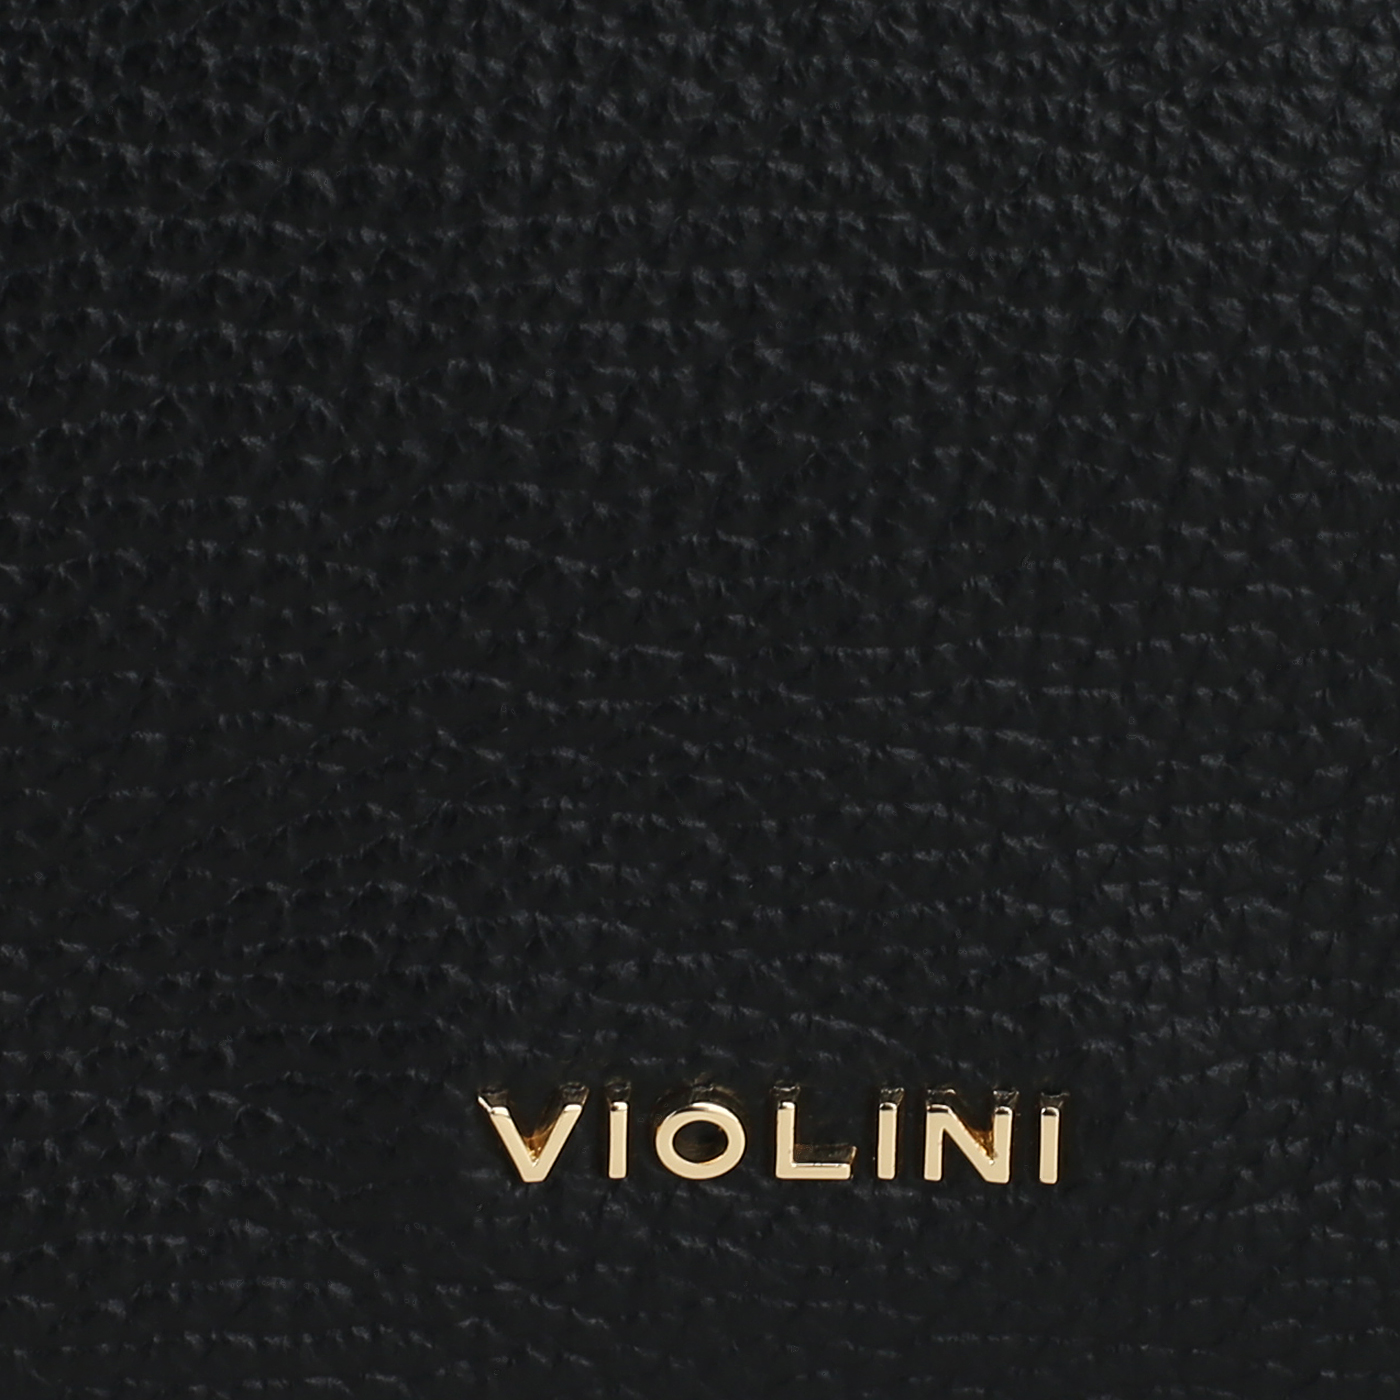 Кожаная сумка Vittorio Violini Palinuro